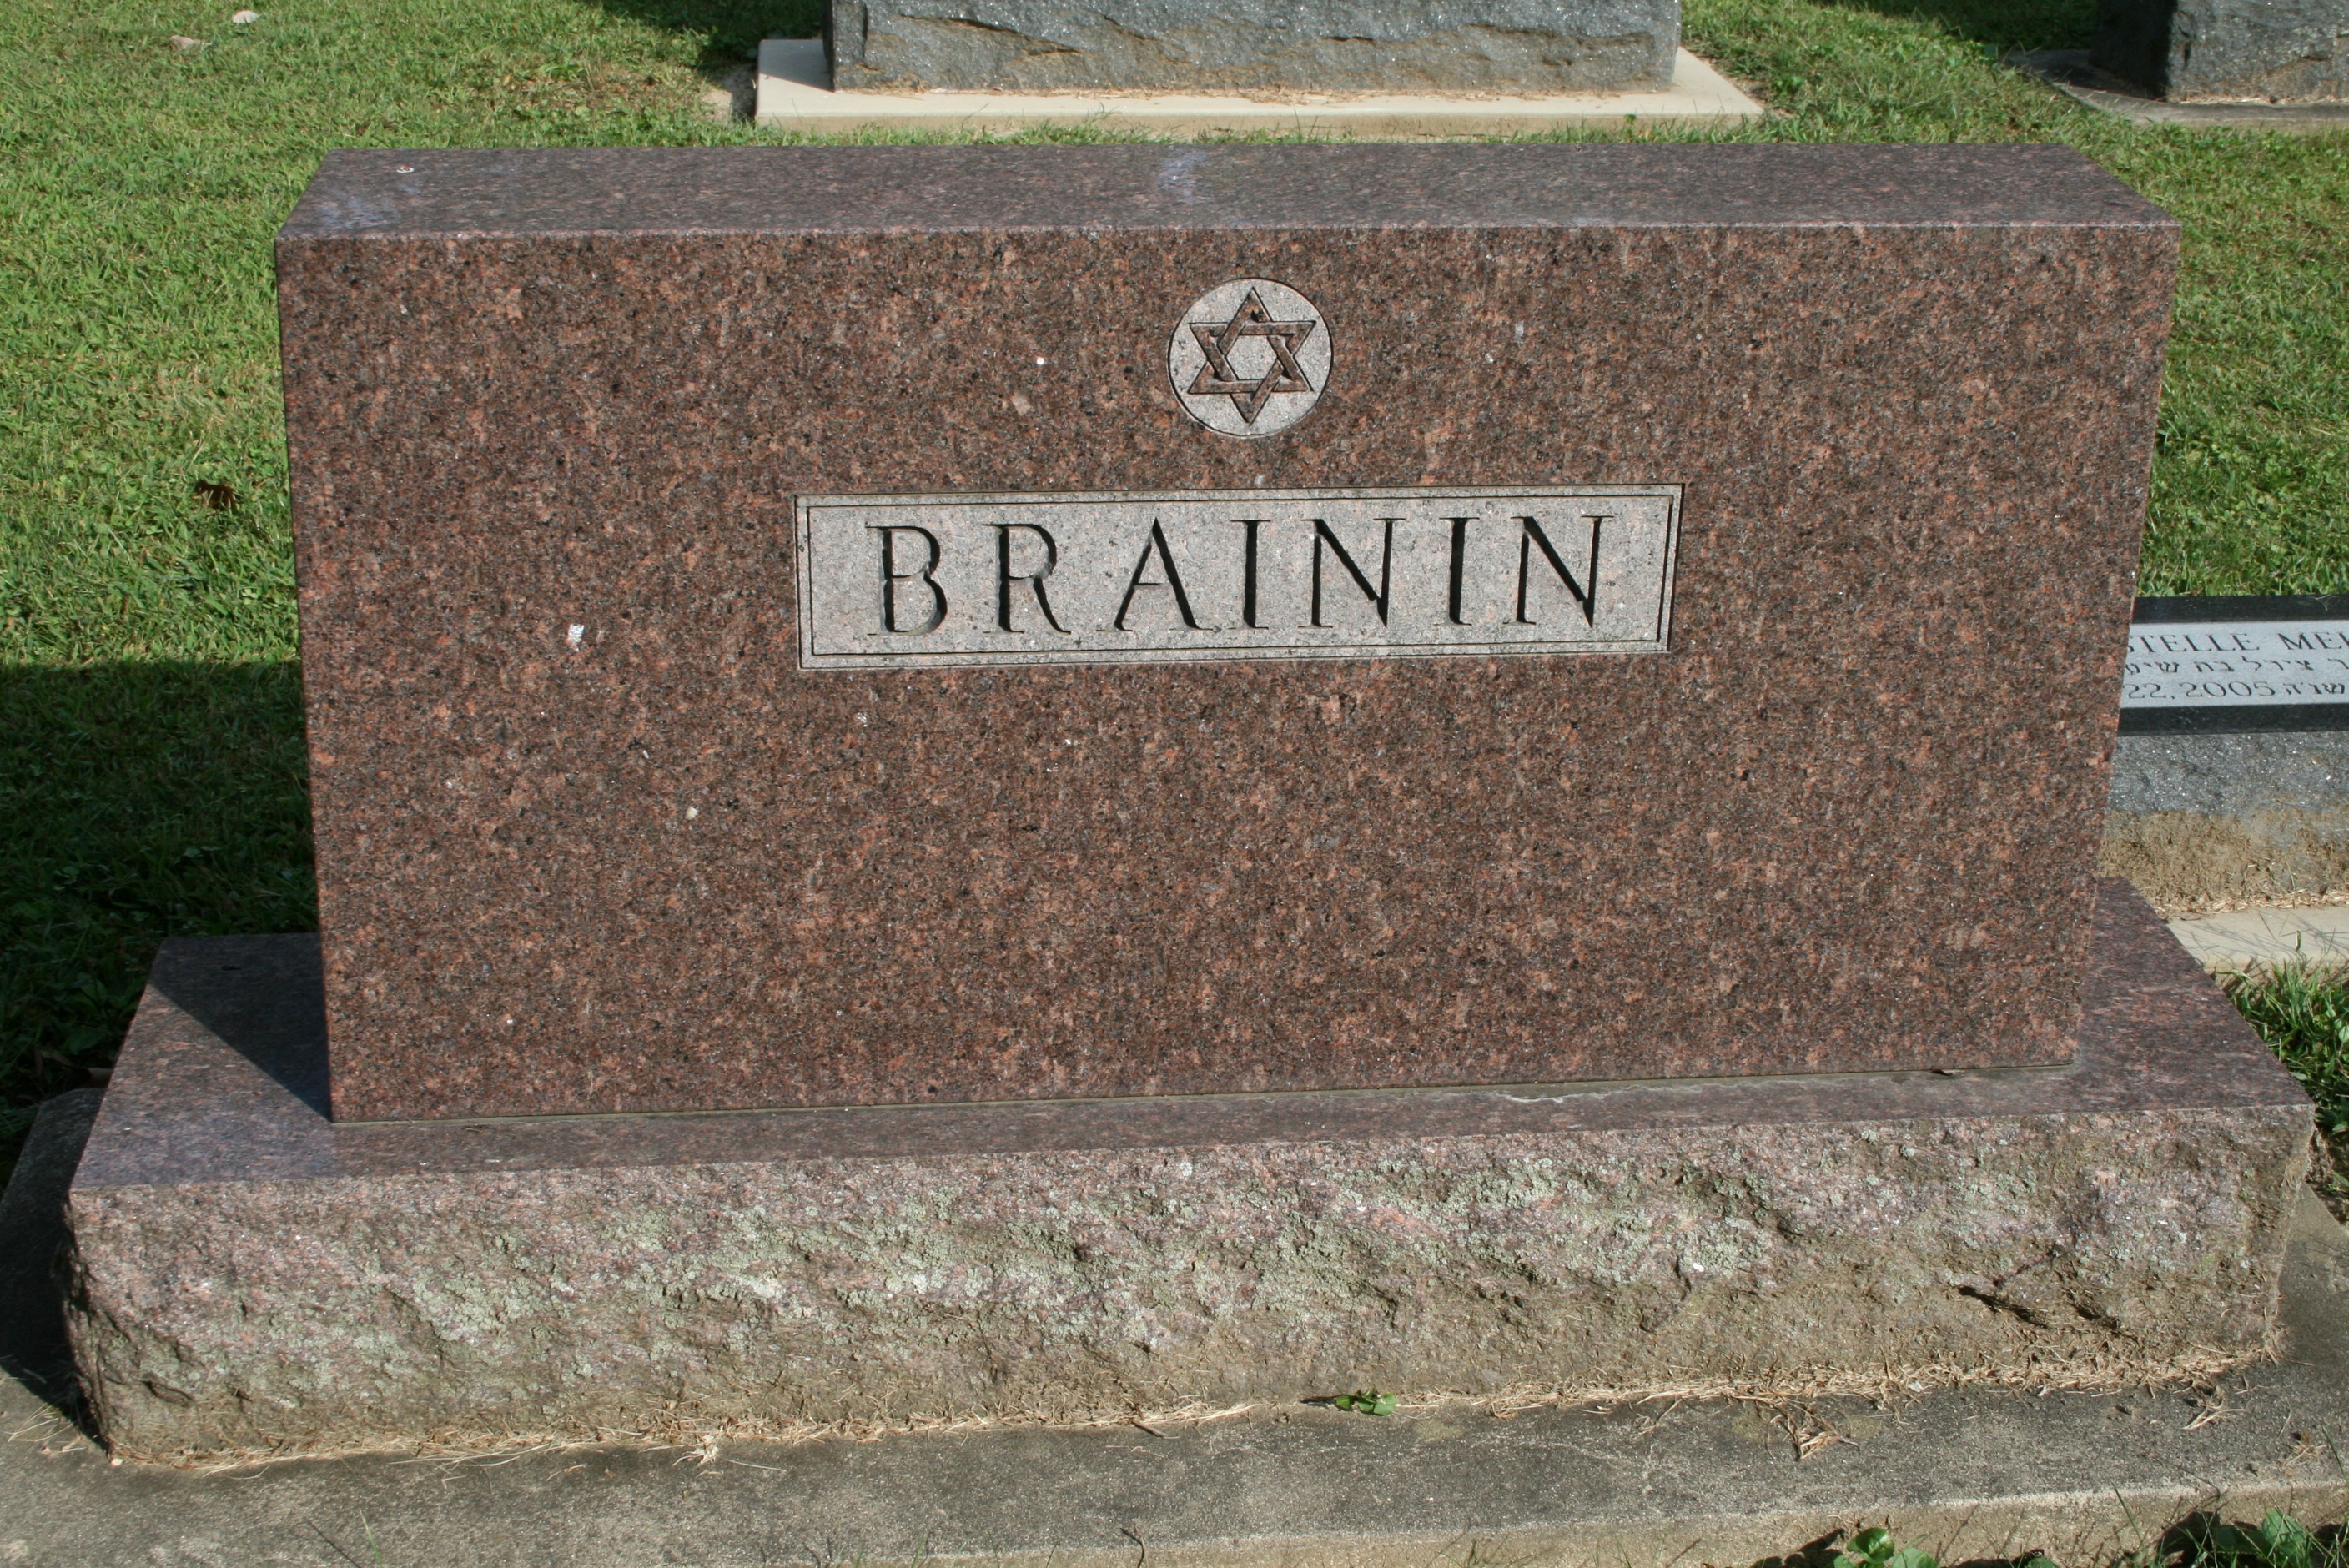 Brainin